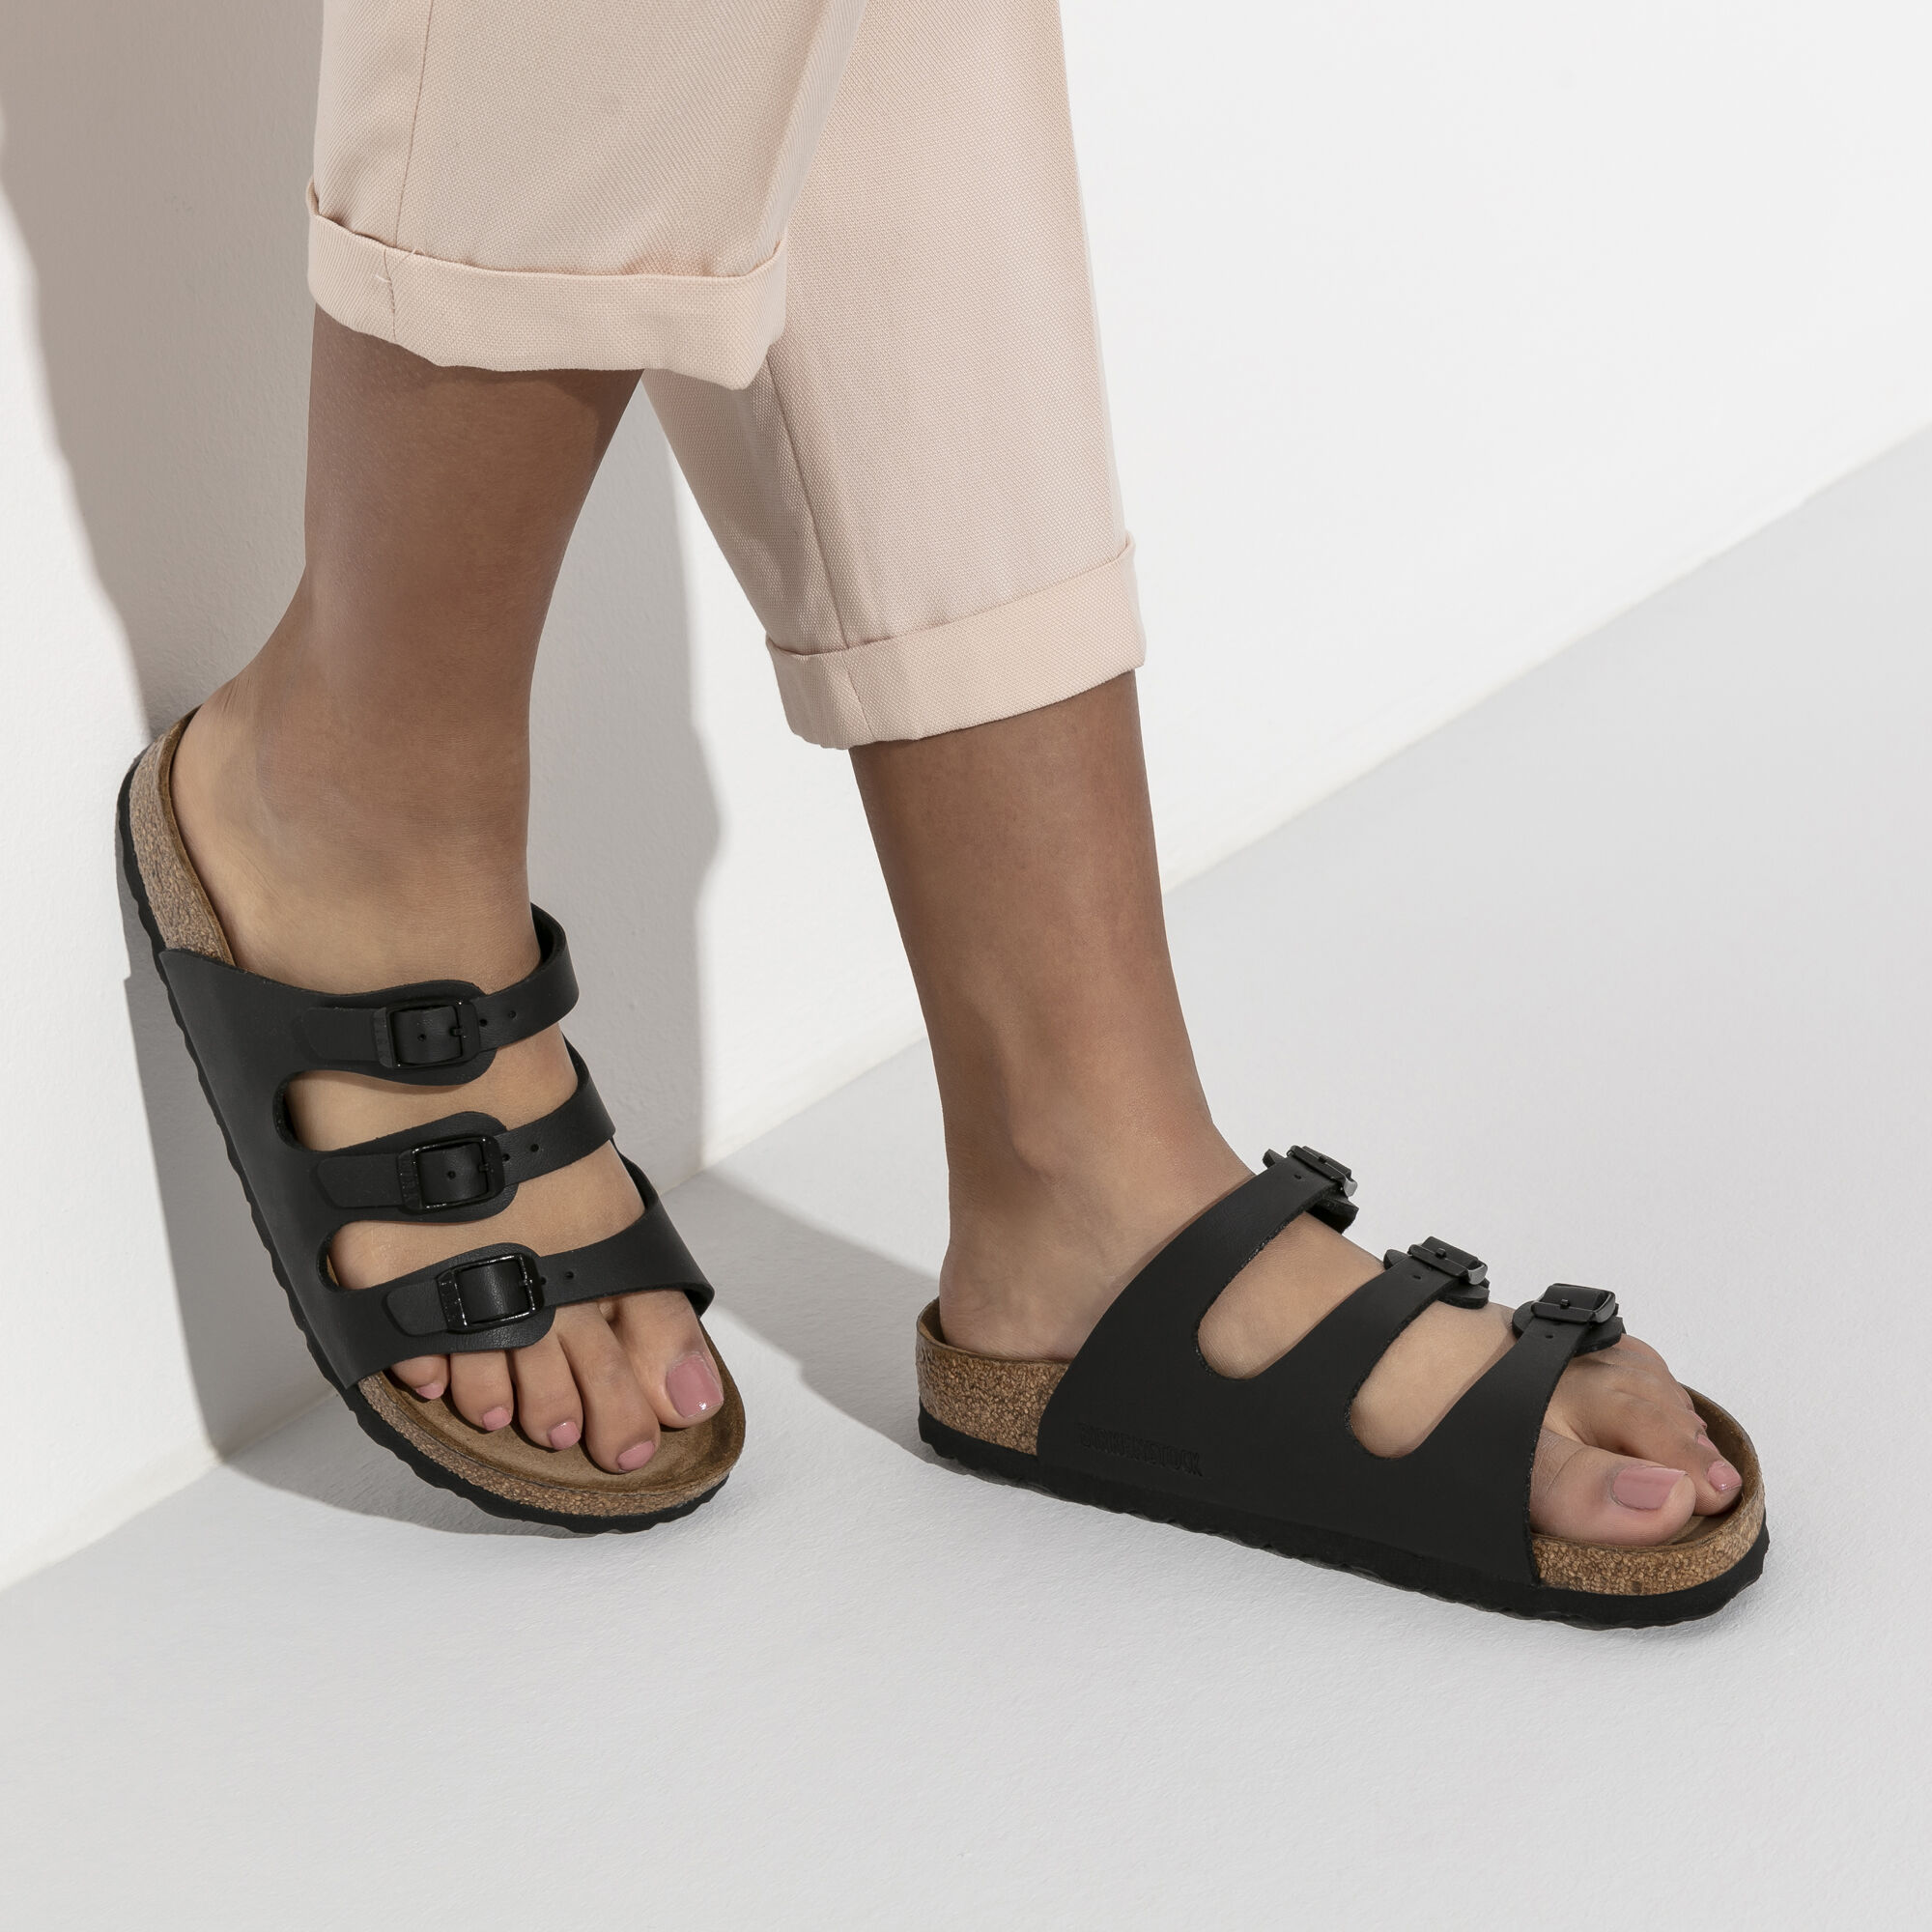 birkenstock florida sandals